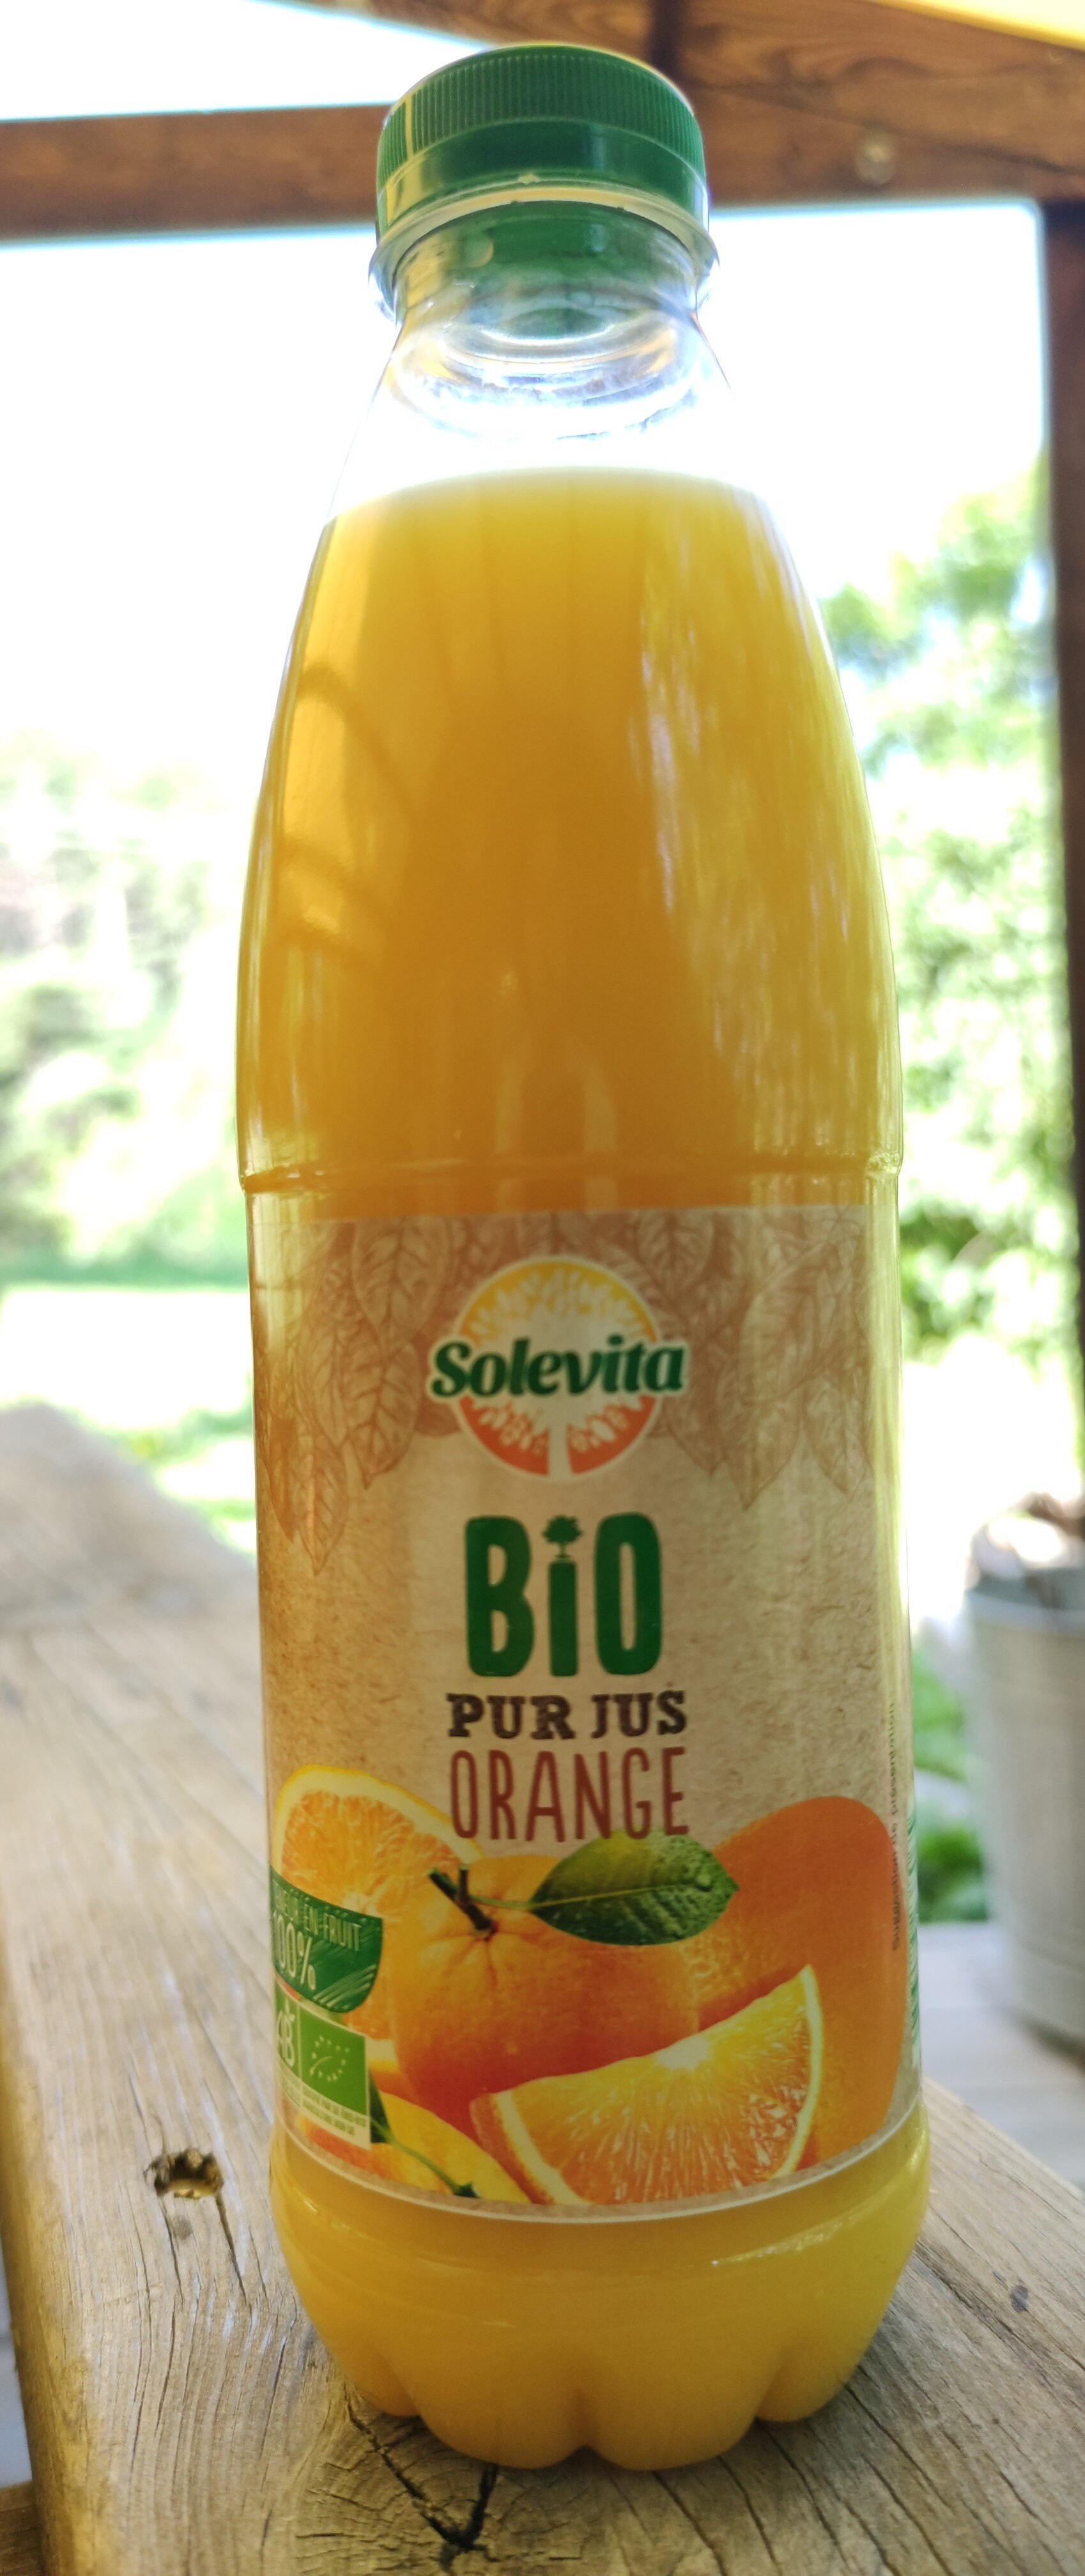 Bio pur jus orange - Product - fr